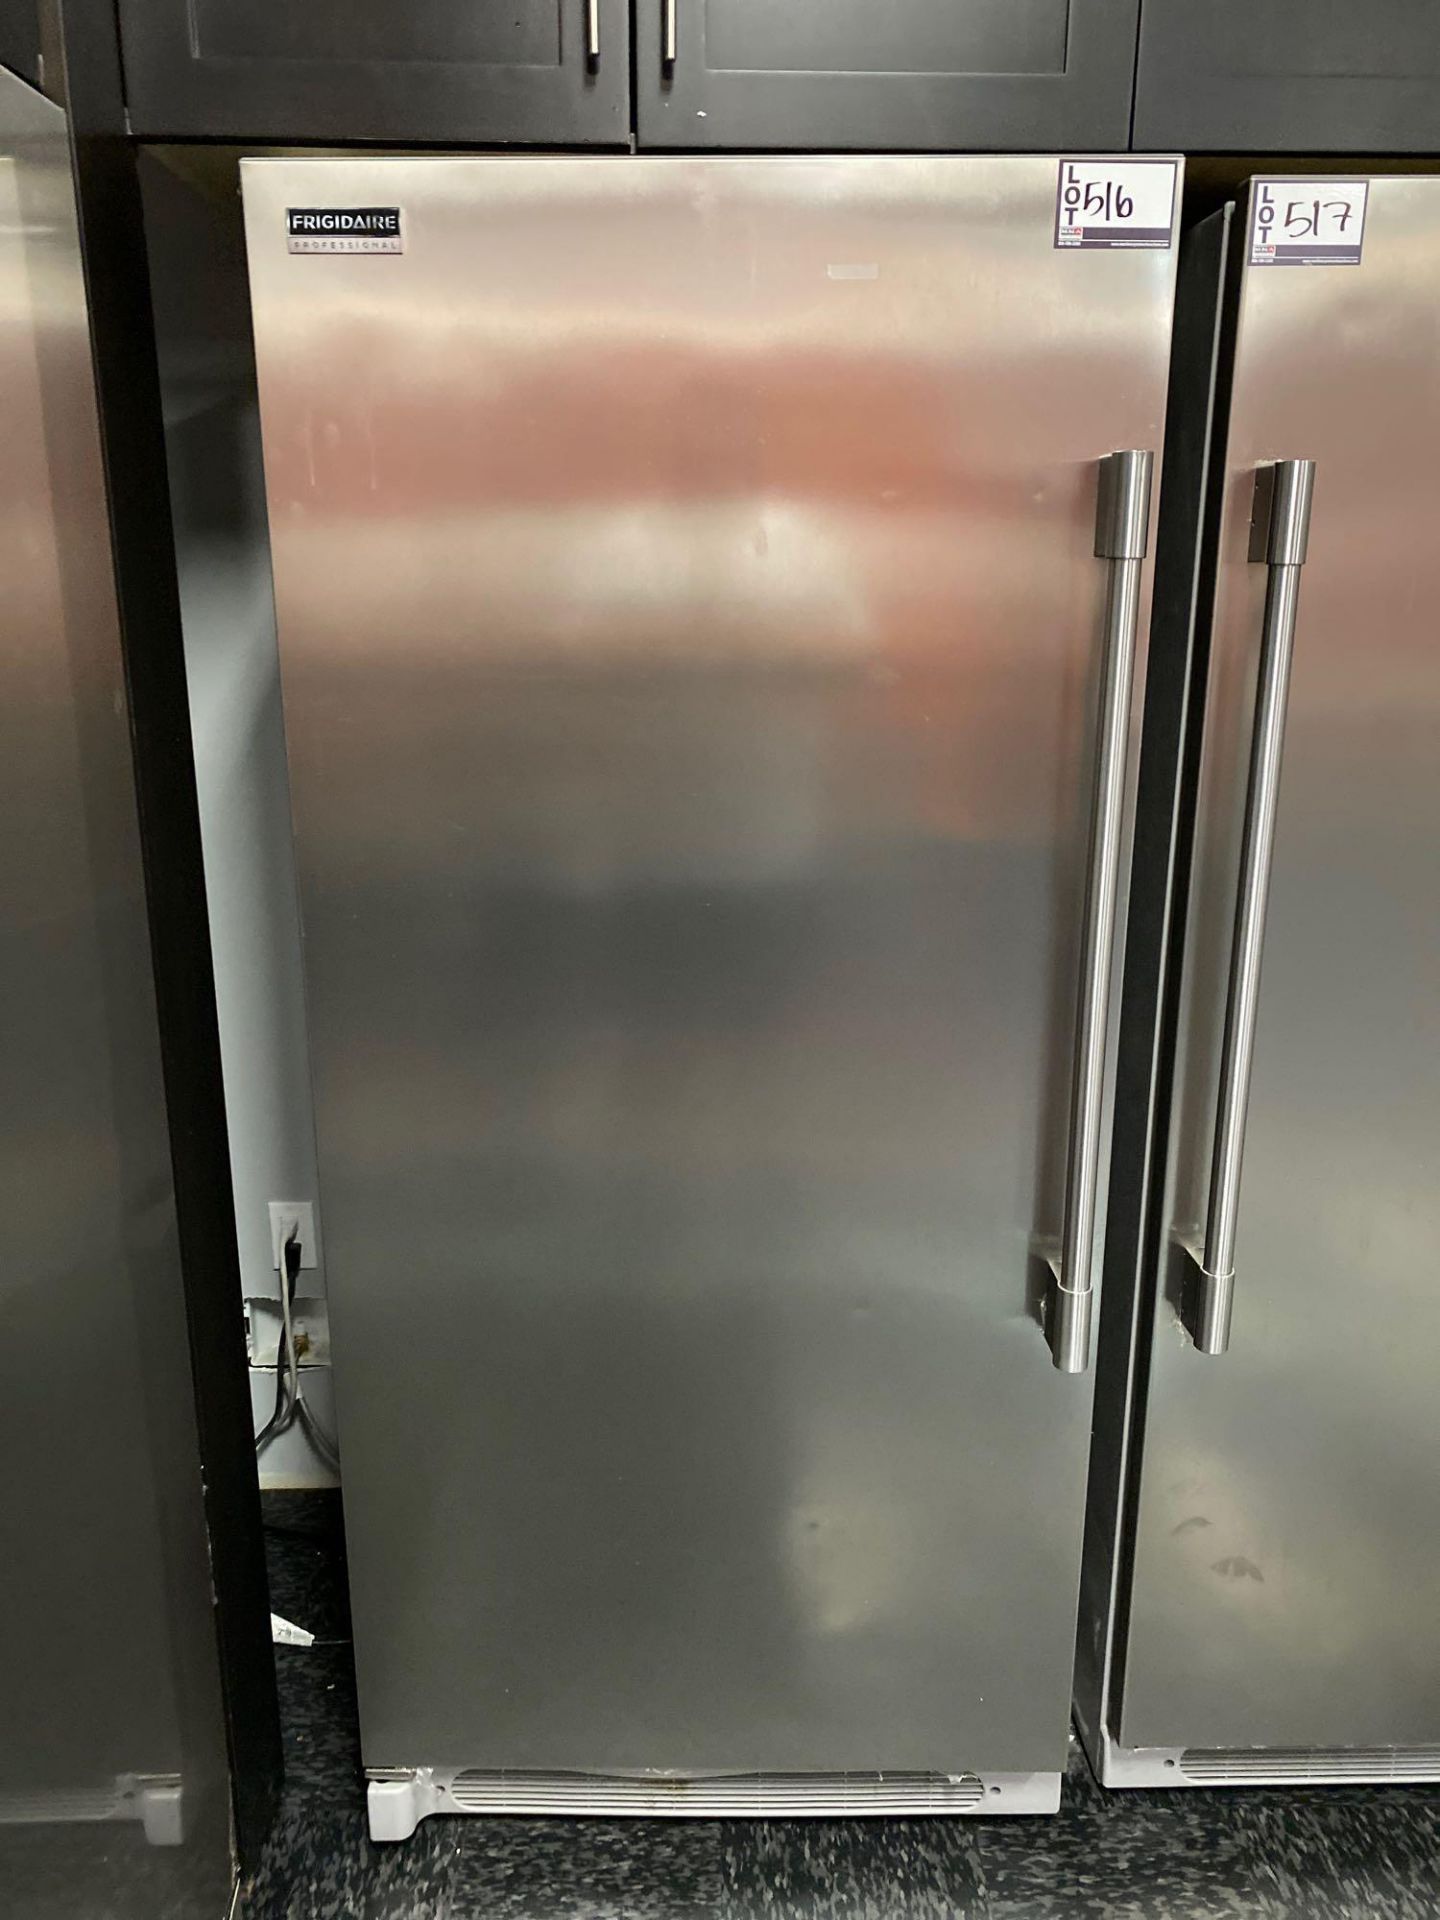 Frigidaire Professional Refrigerator